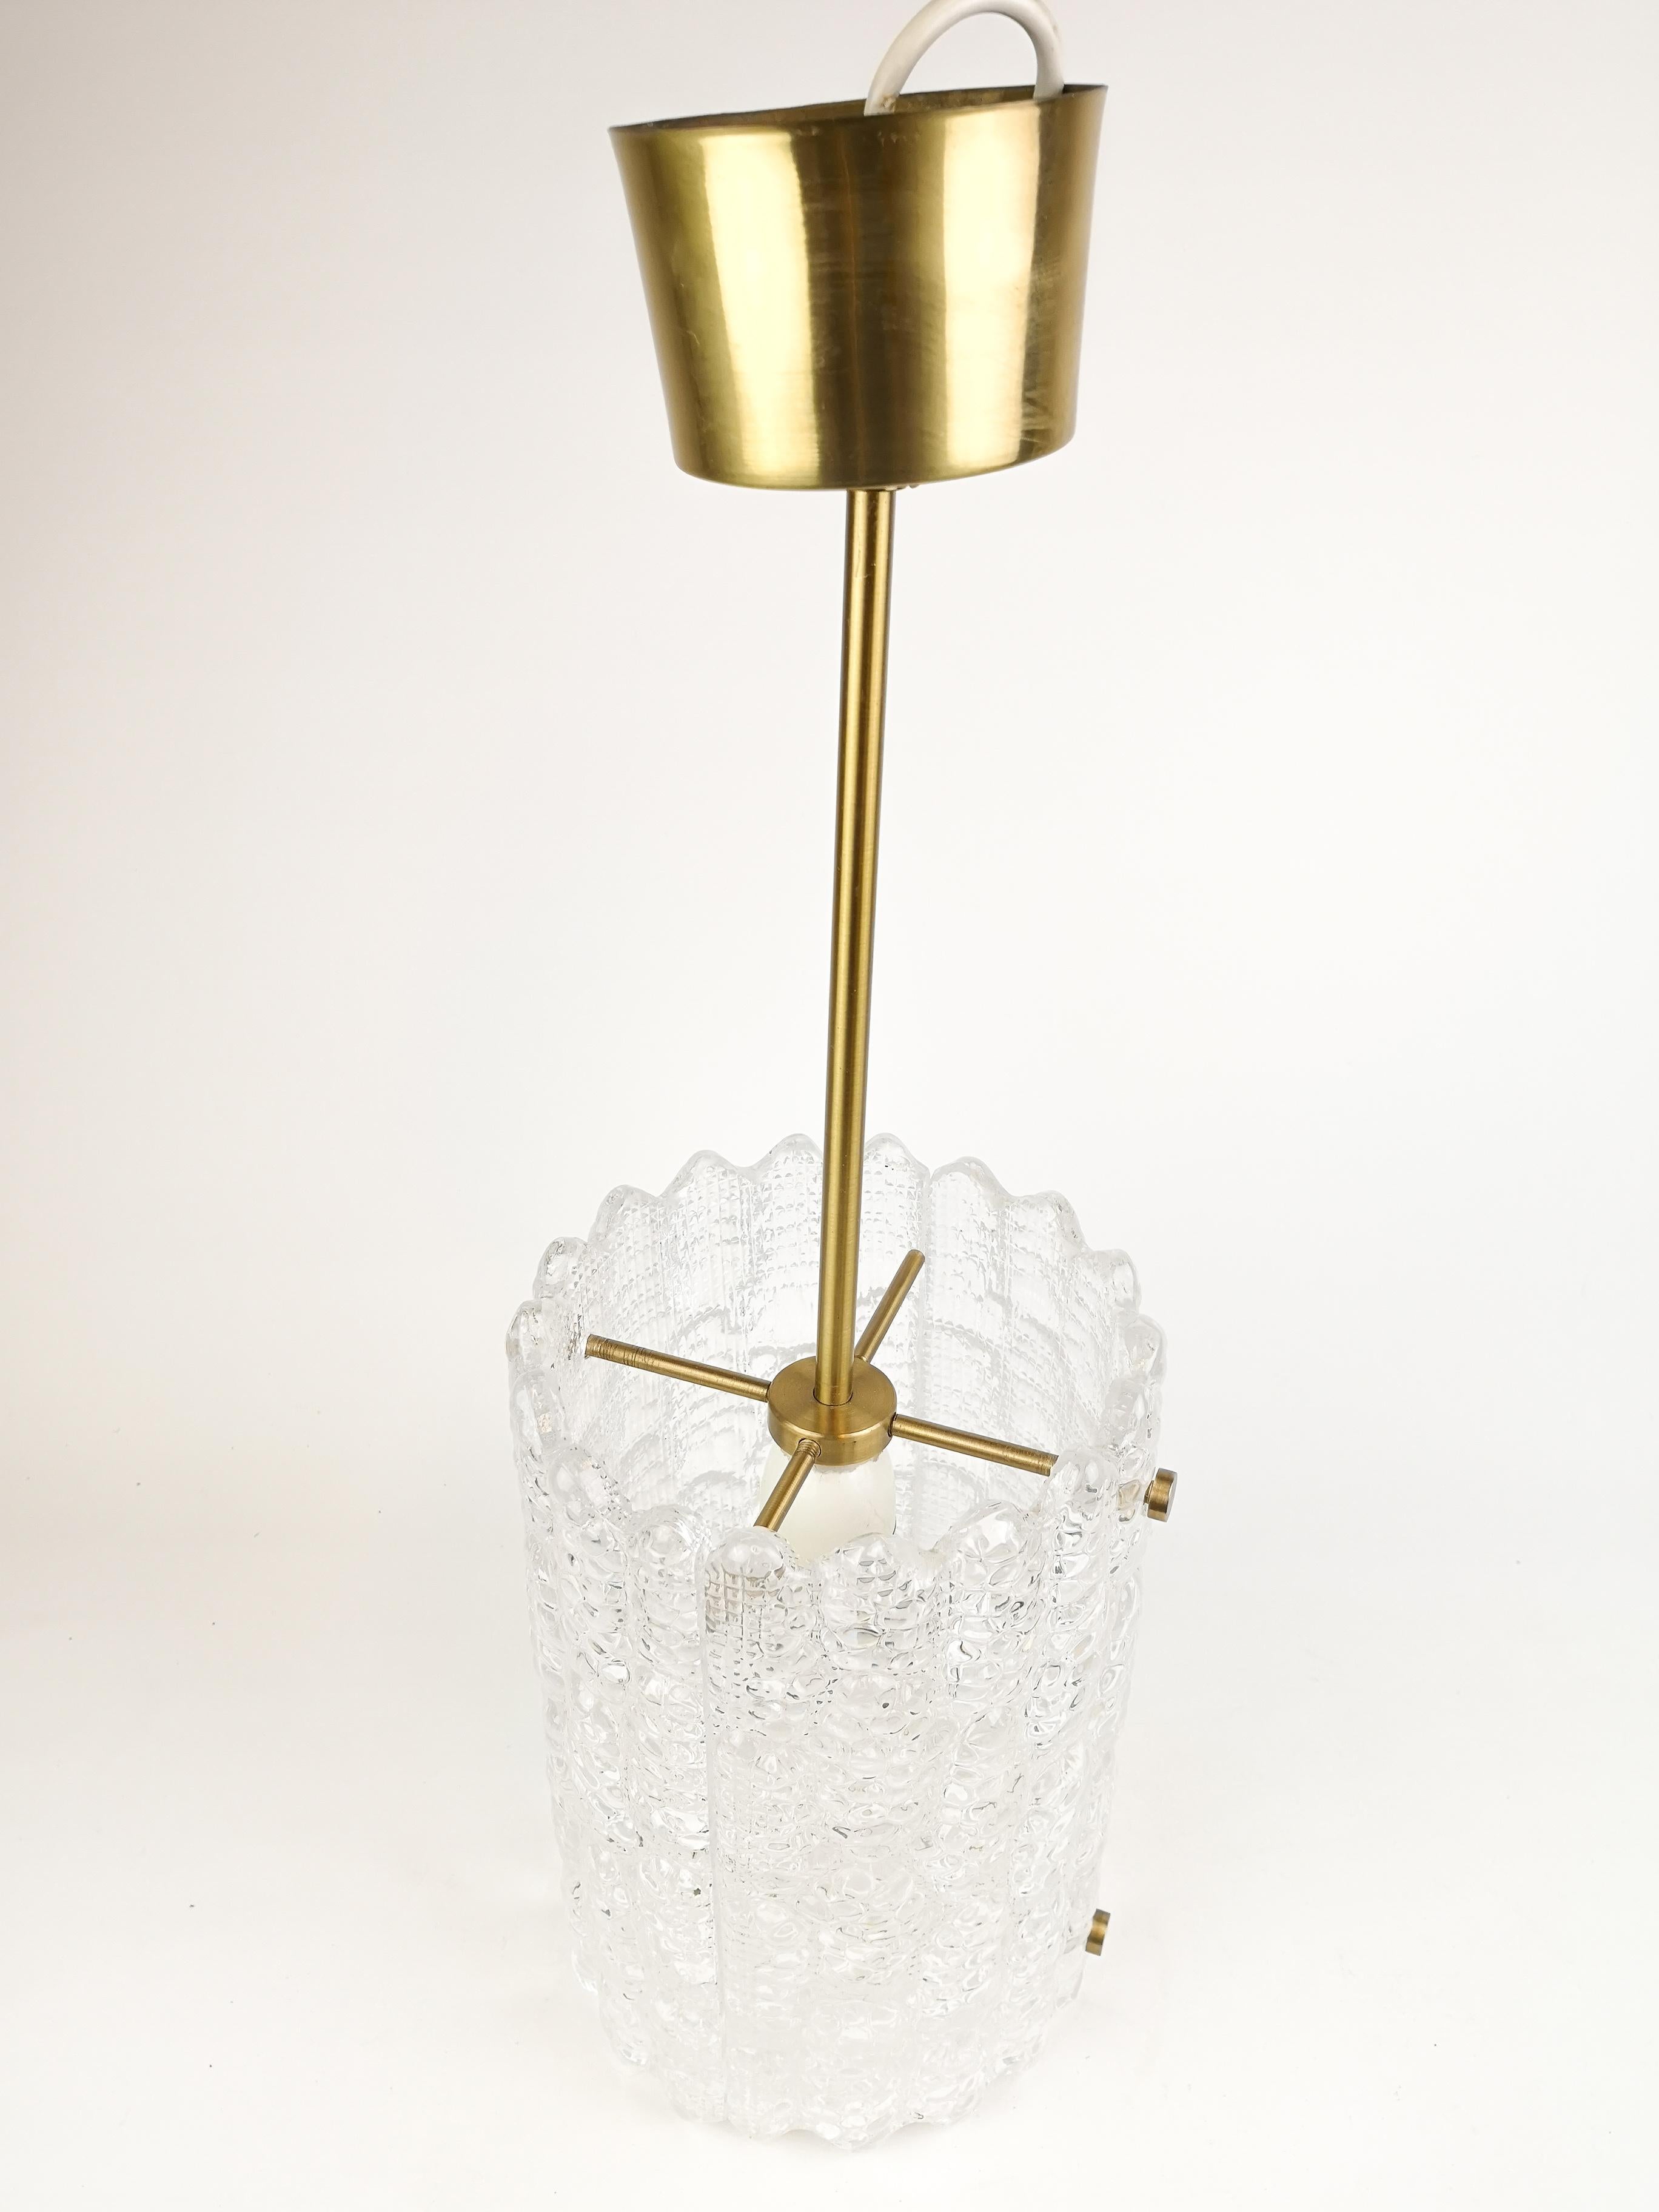 Diese atemberaubende schwedische Zylinder-Hängeleuchte aus der Mitte des Jahrhunderts wurde in den 1960er Jahren von Carl Fagerlund für Orrefors Glasbruk entworfen. Wunderschönes Licht, wenn das Kristalllicht auf das Messing trifft.

Sehr guter